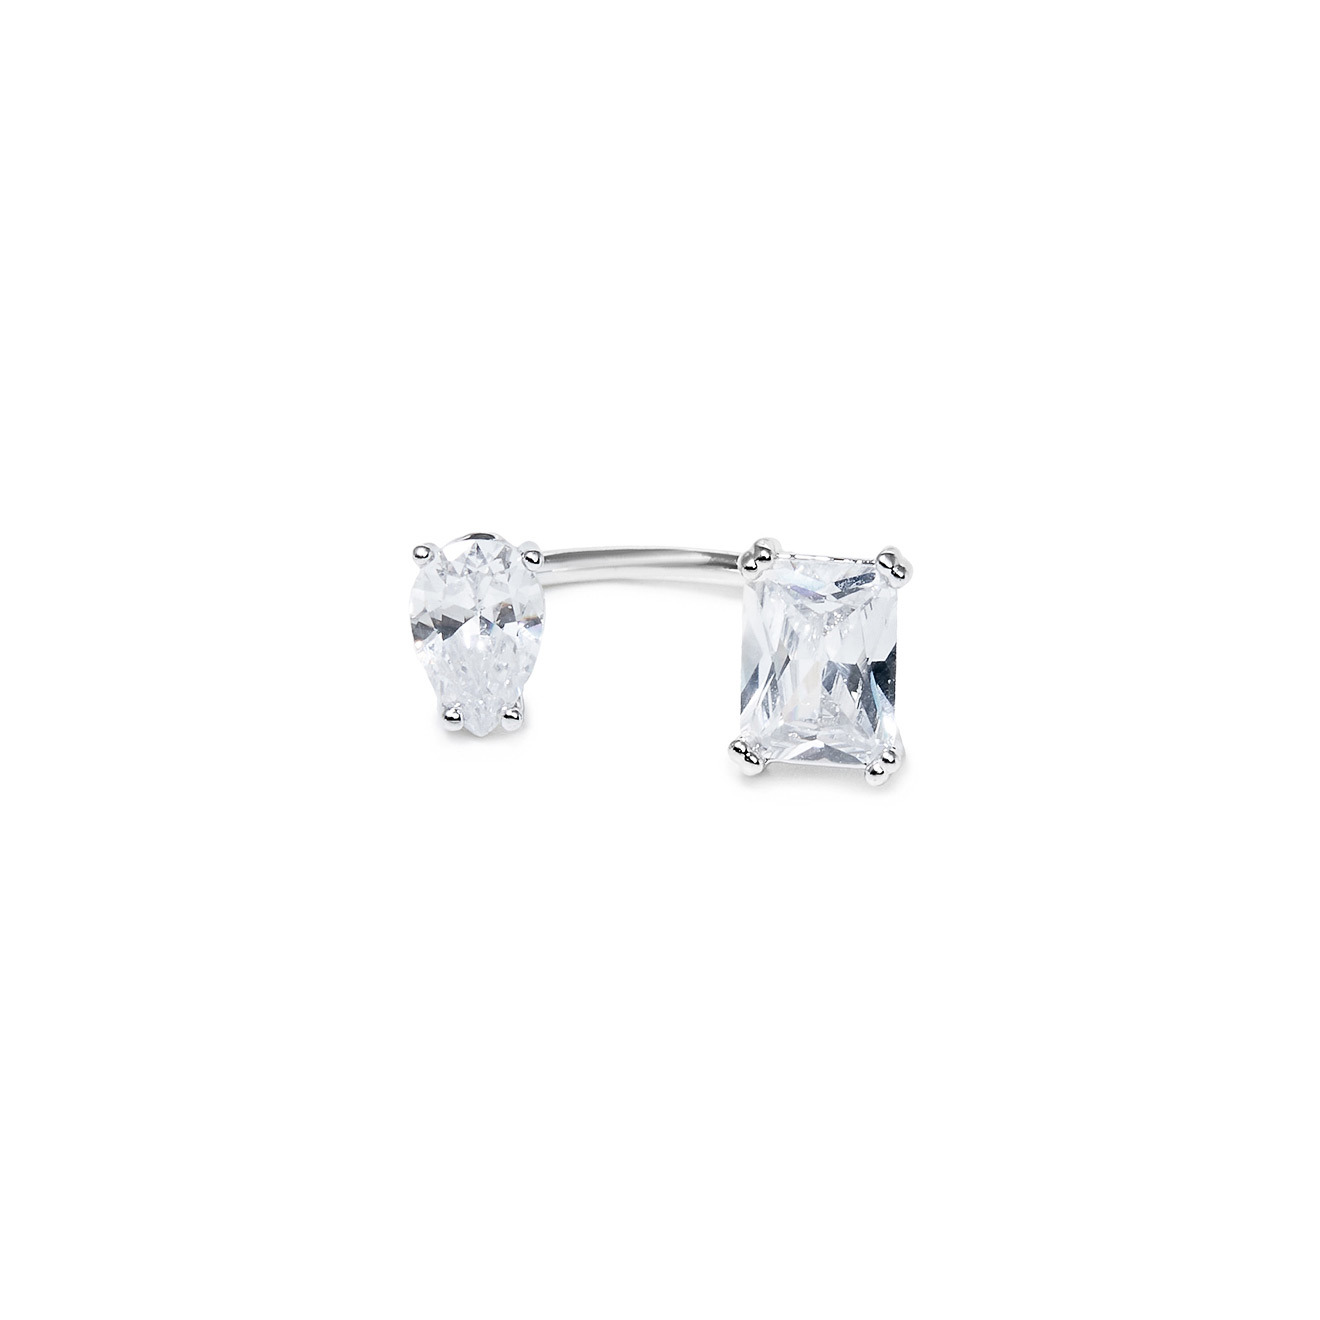 Herald Percy Серебристое незамкнутое кольцо с кристаллами herald percy серебристое незамкнутое кольцо с кристаллами